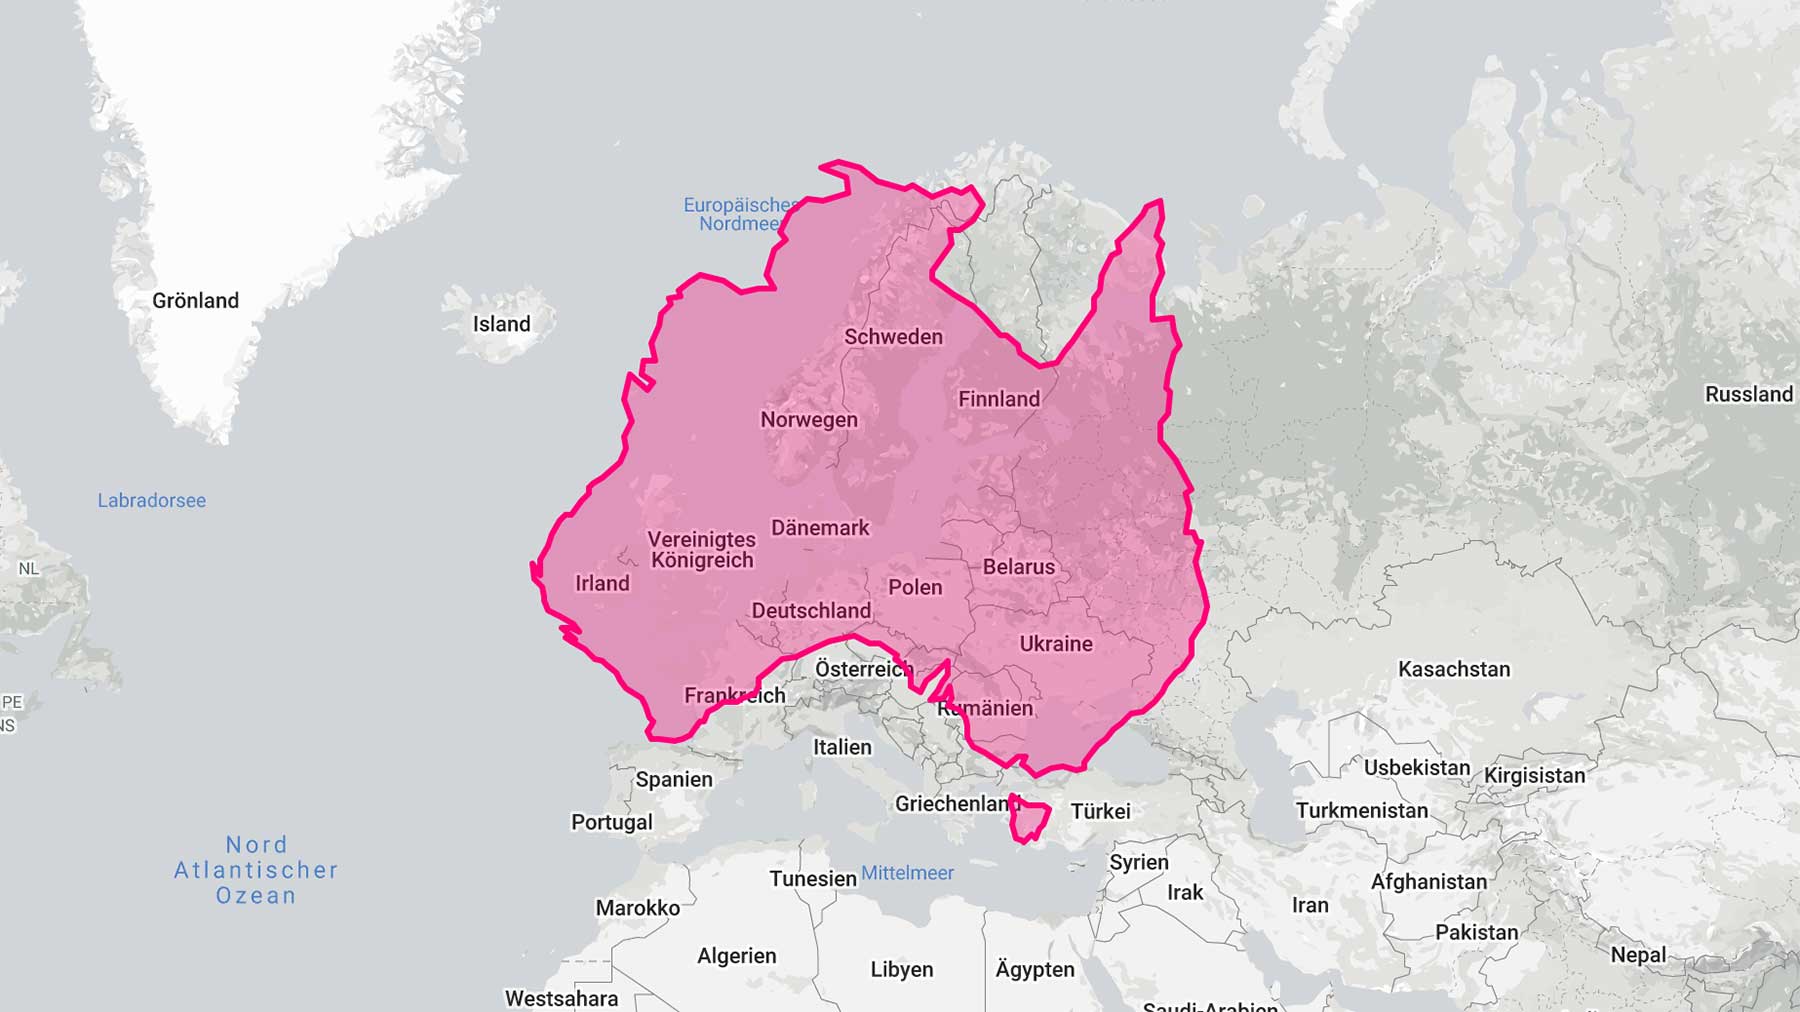 Interaktive Karte zeigt echte Größe von Ländern im direkten Vergleich